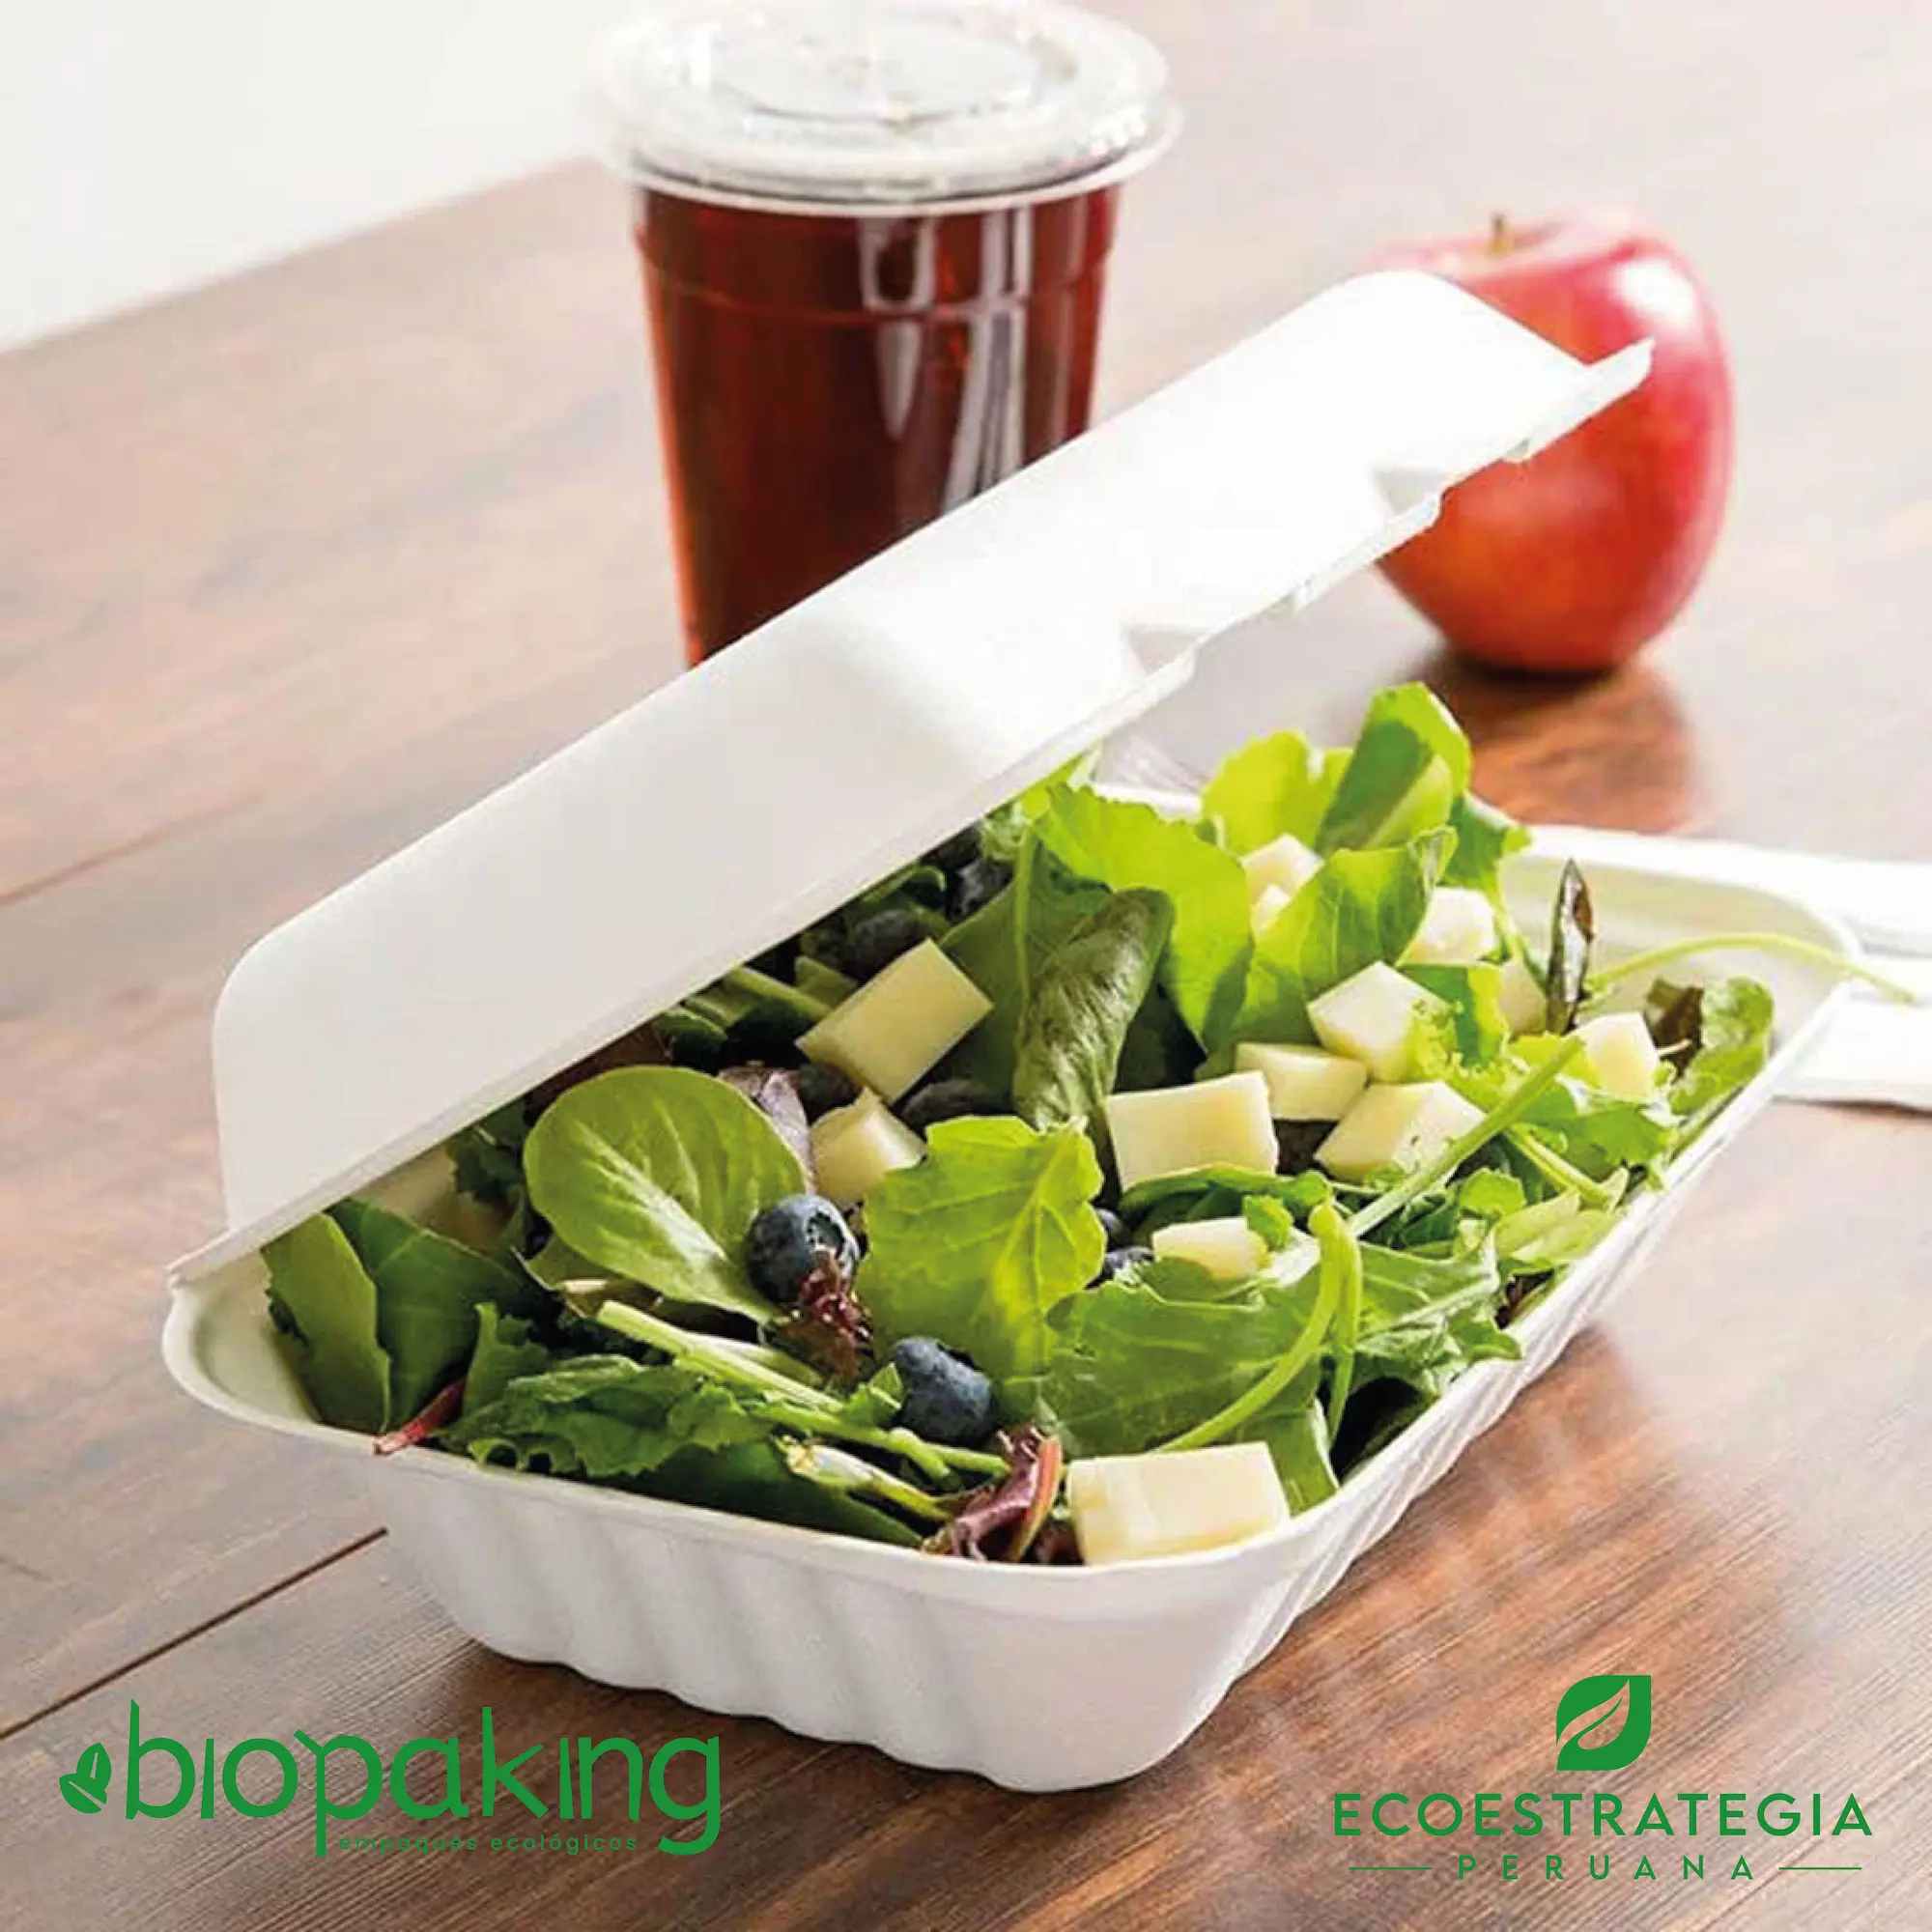 El envase biodegradable CT7 tiene una capacidad de 550ml. Táper biodegradable a base del bagazo de fibra de caña de azúcar, empaques de gramaje ideal para ensaladas y comidas